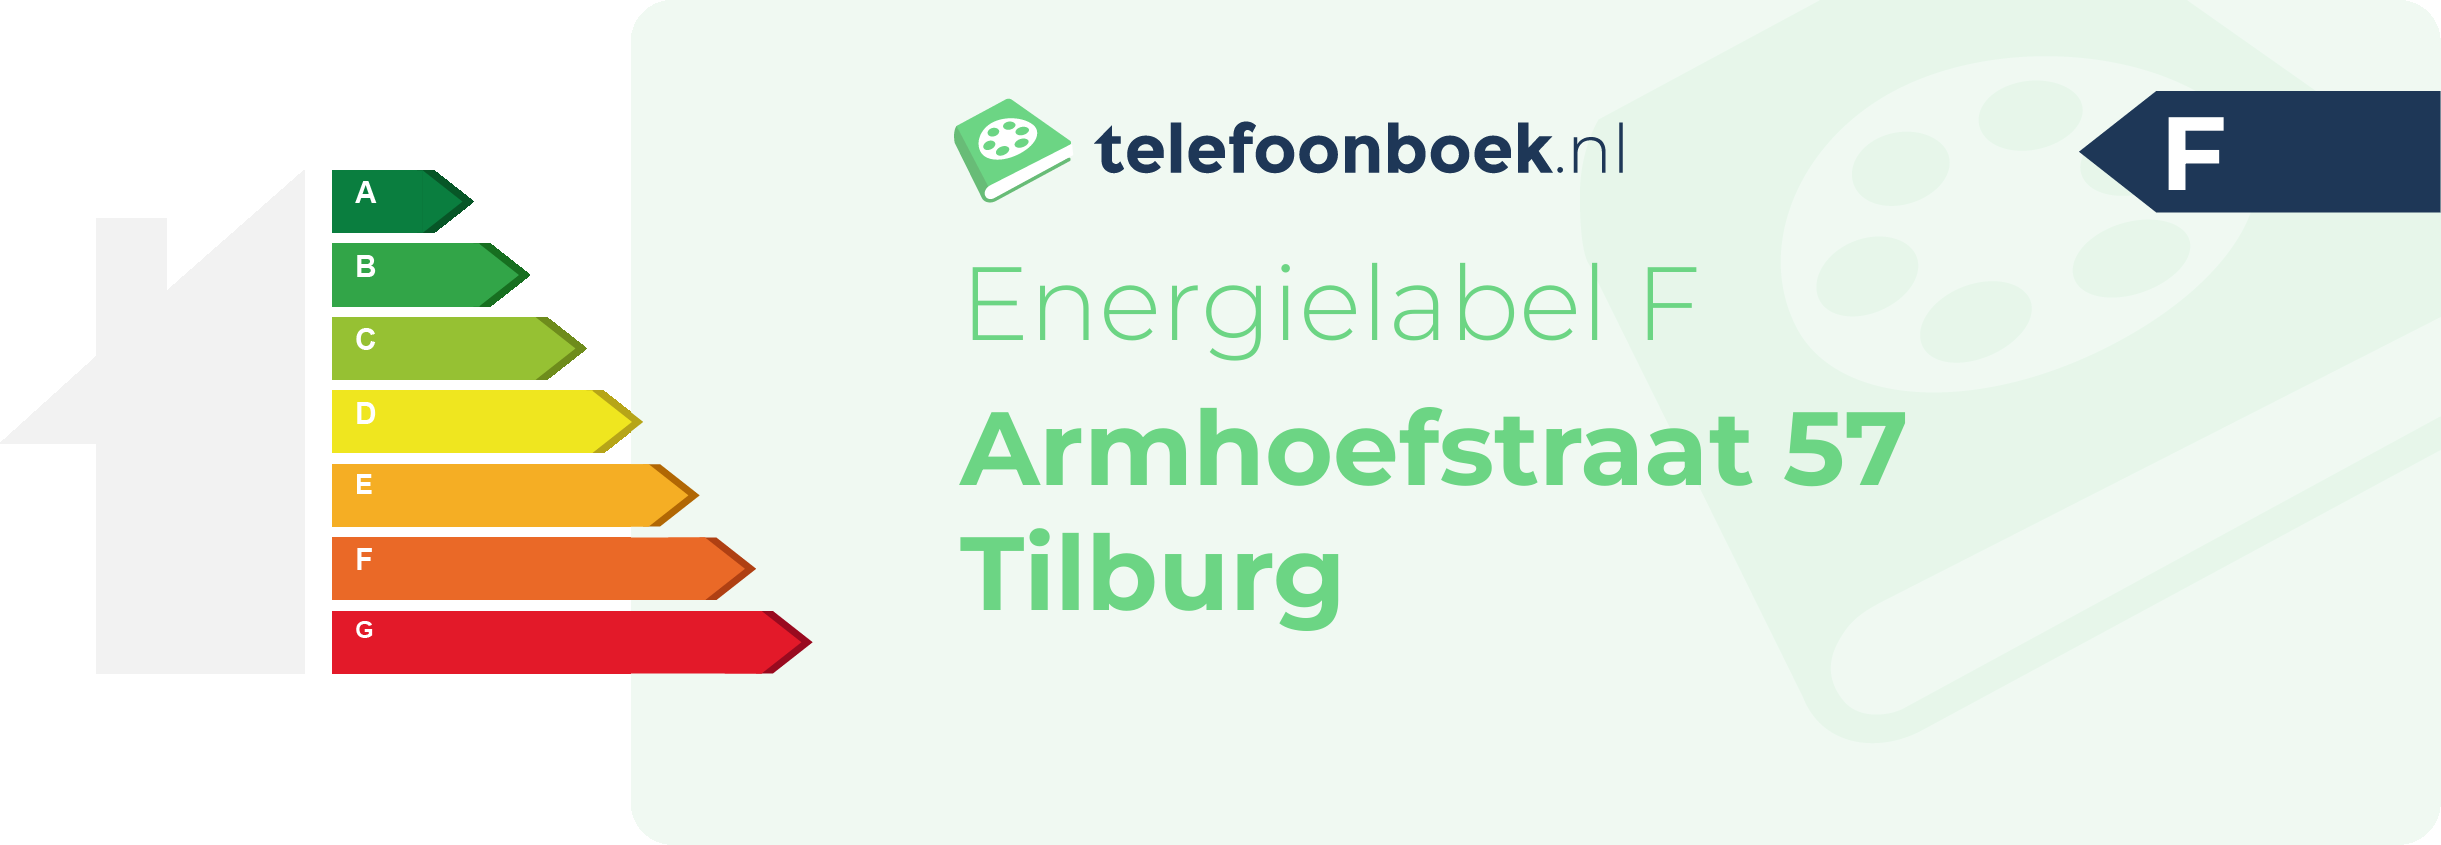 Energielabel Armhoefstraat 57 Tilburg